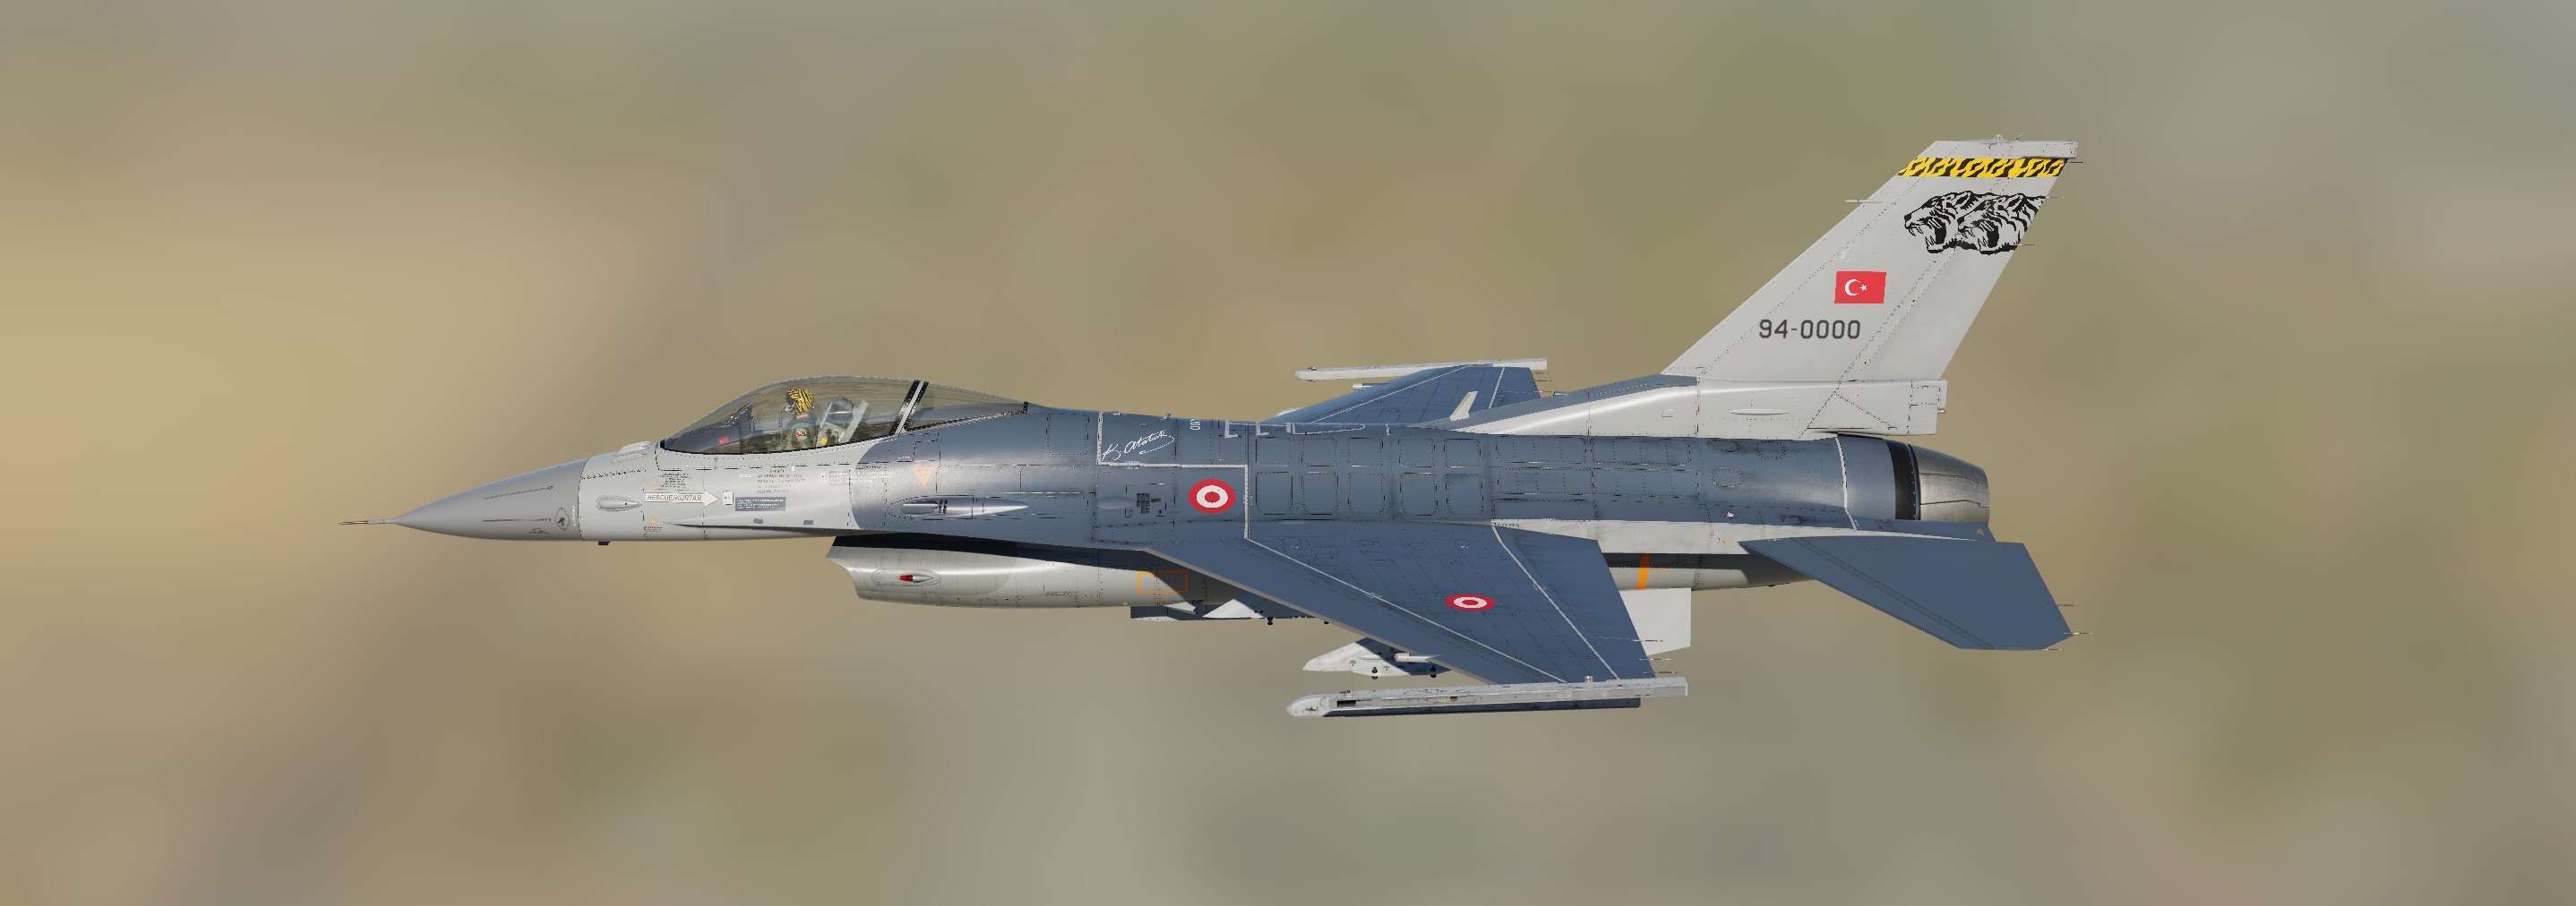 Turkish Air Force 192.Kaplan Filo_4K